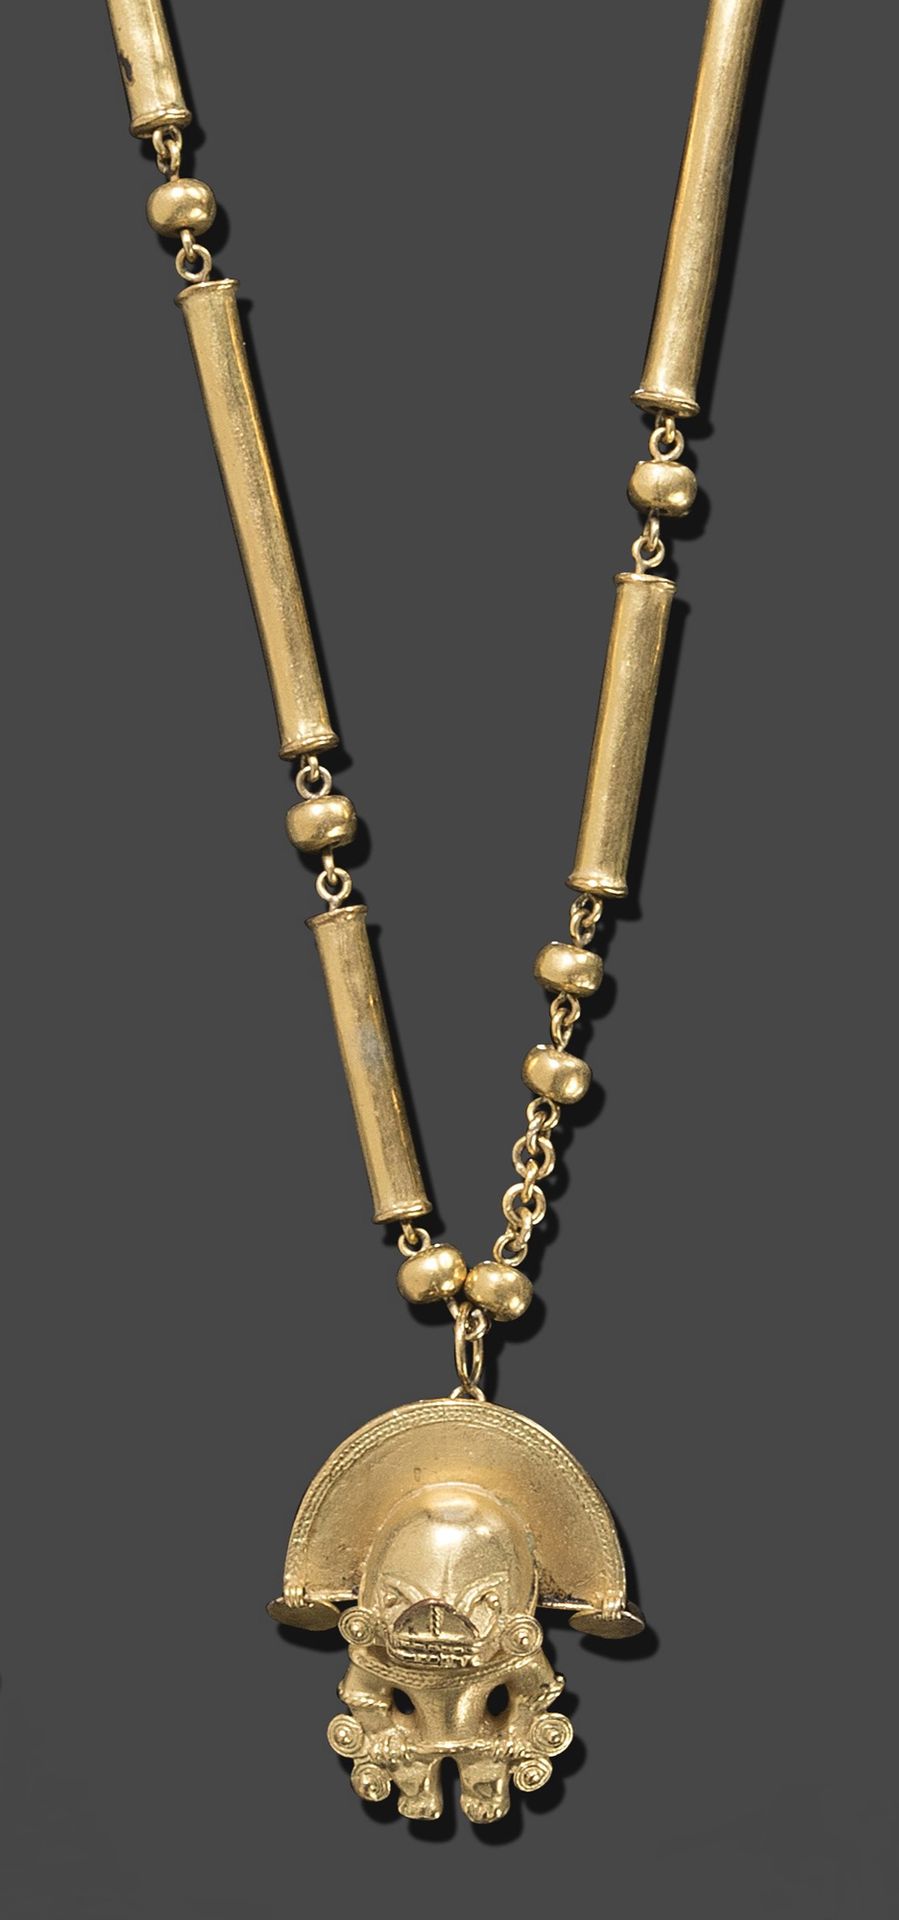 Null 黄金项链，交替使用滚珠和金珠。它持有一个代表印加神像的吊坠。
现代南美的工作。
毛重约77.29g